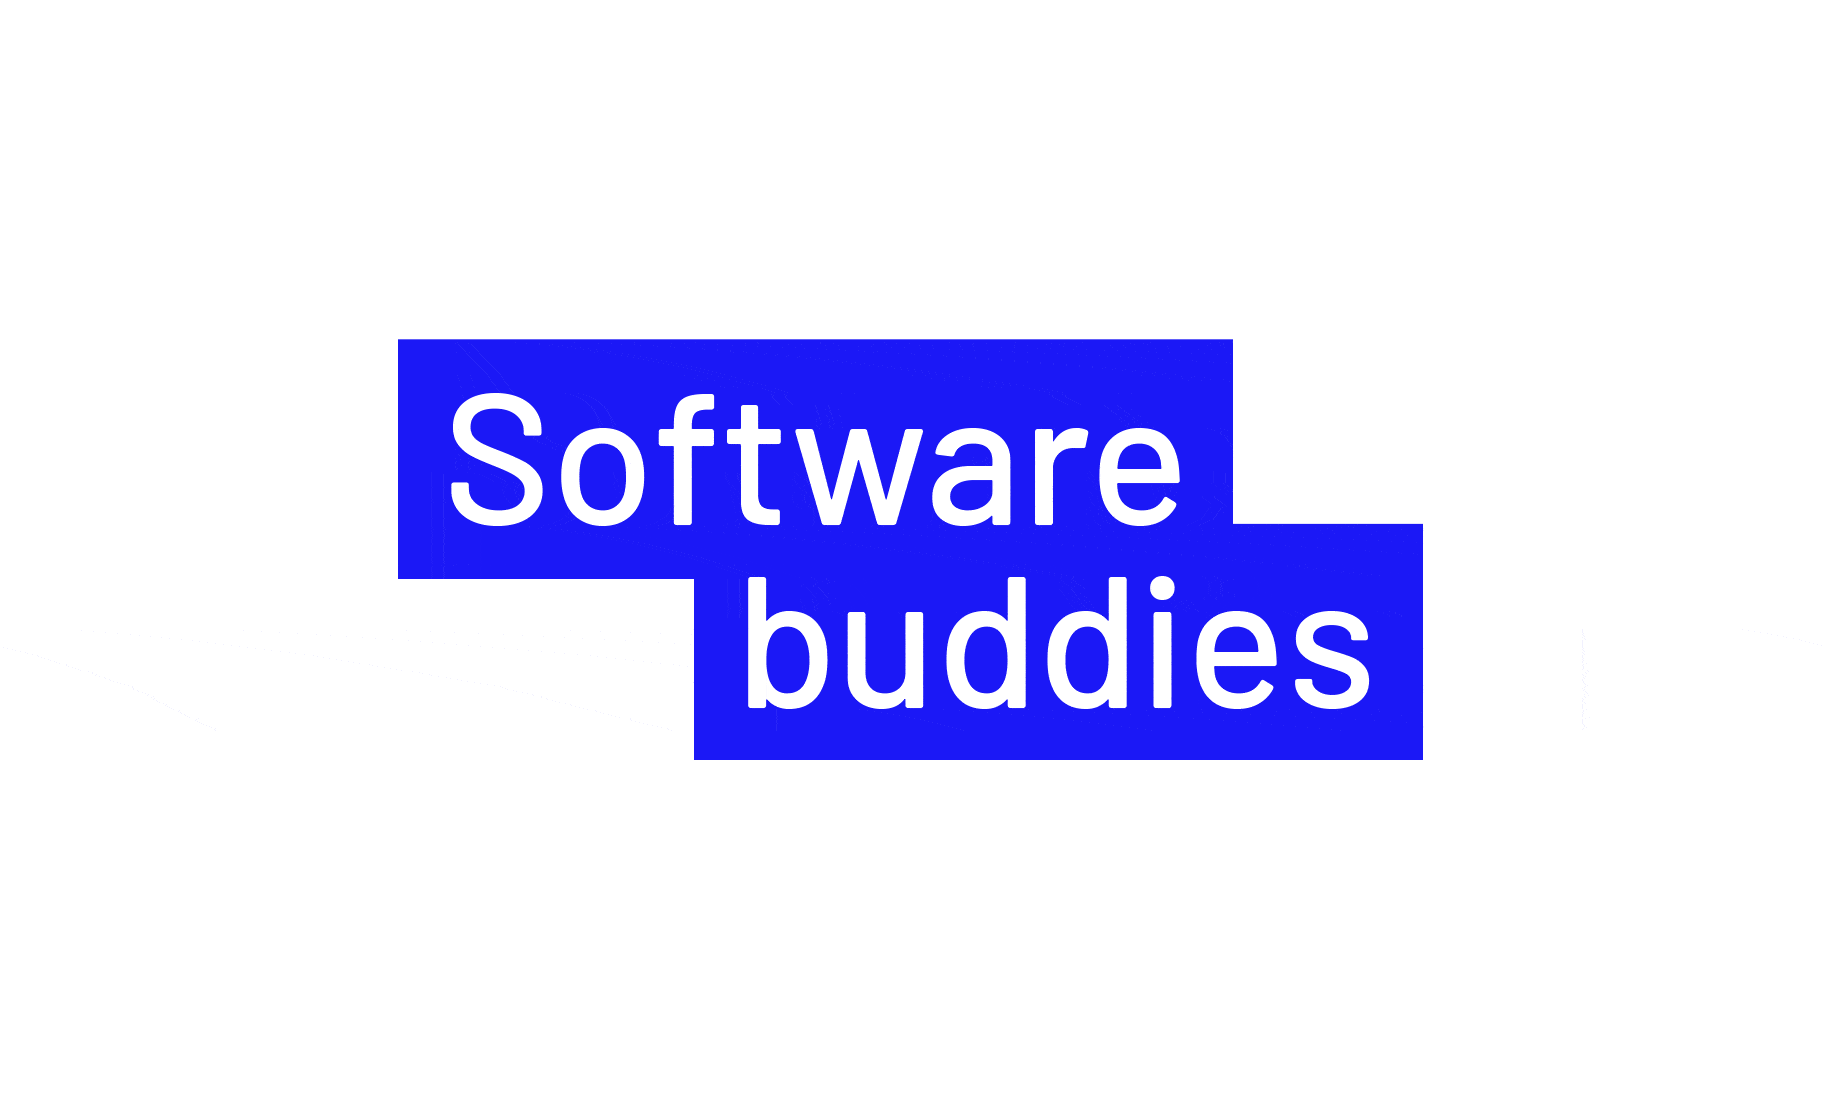 Gif: Softwarebuddies, Hintergrund wechselt zu blau- weiß